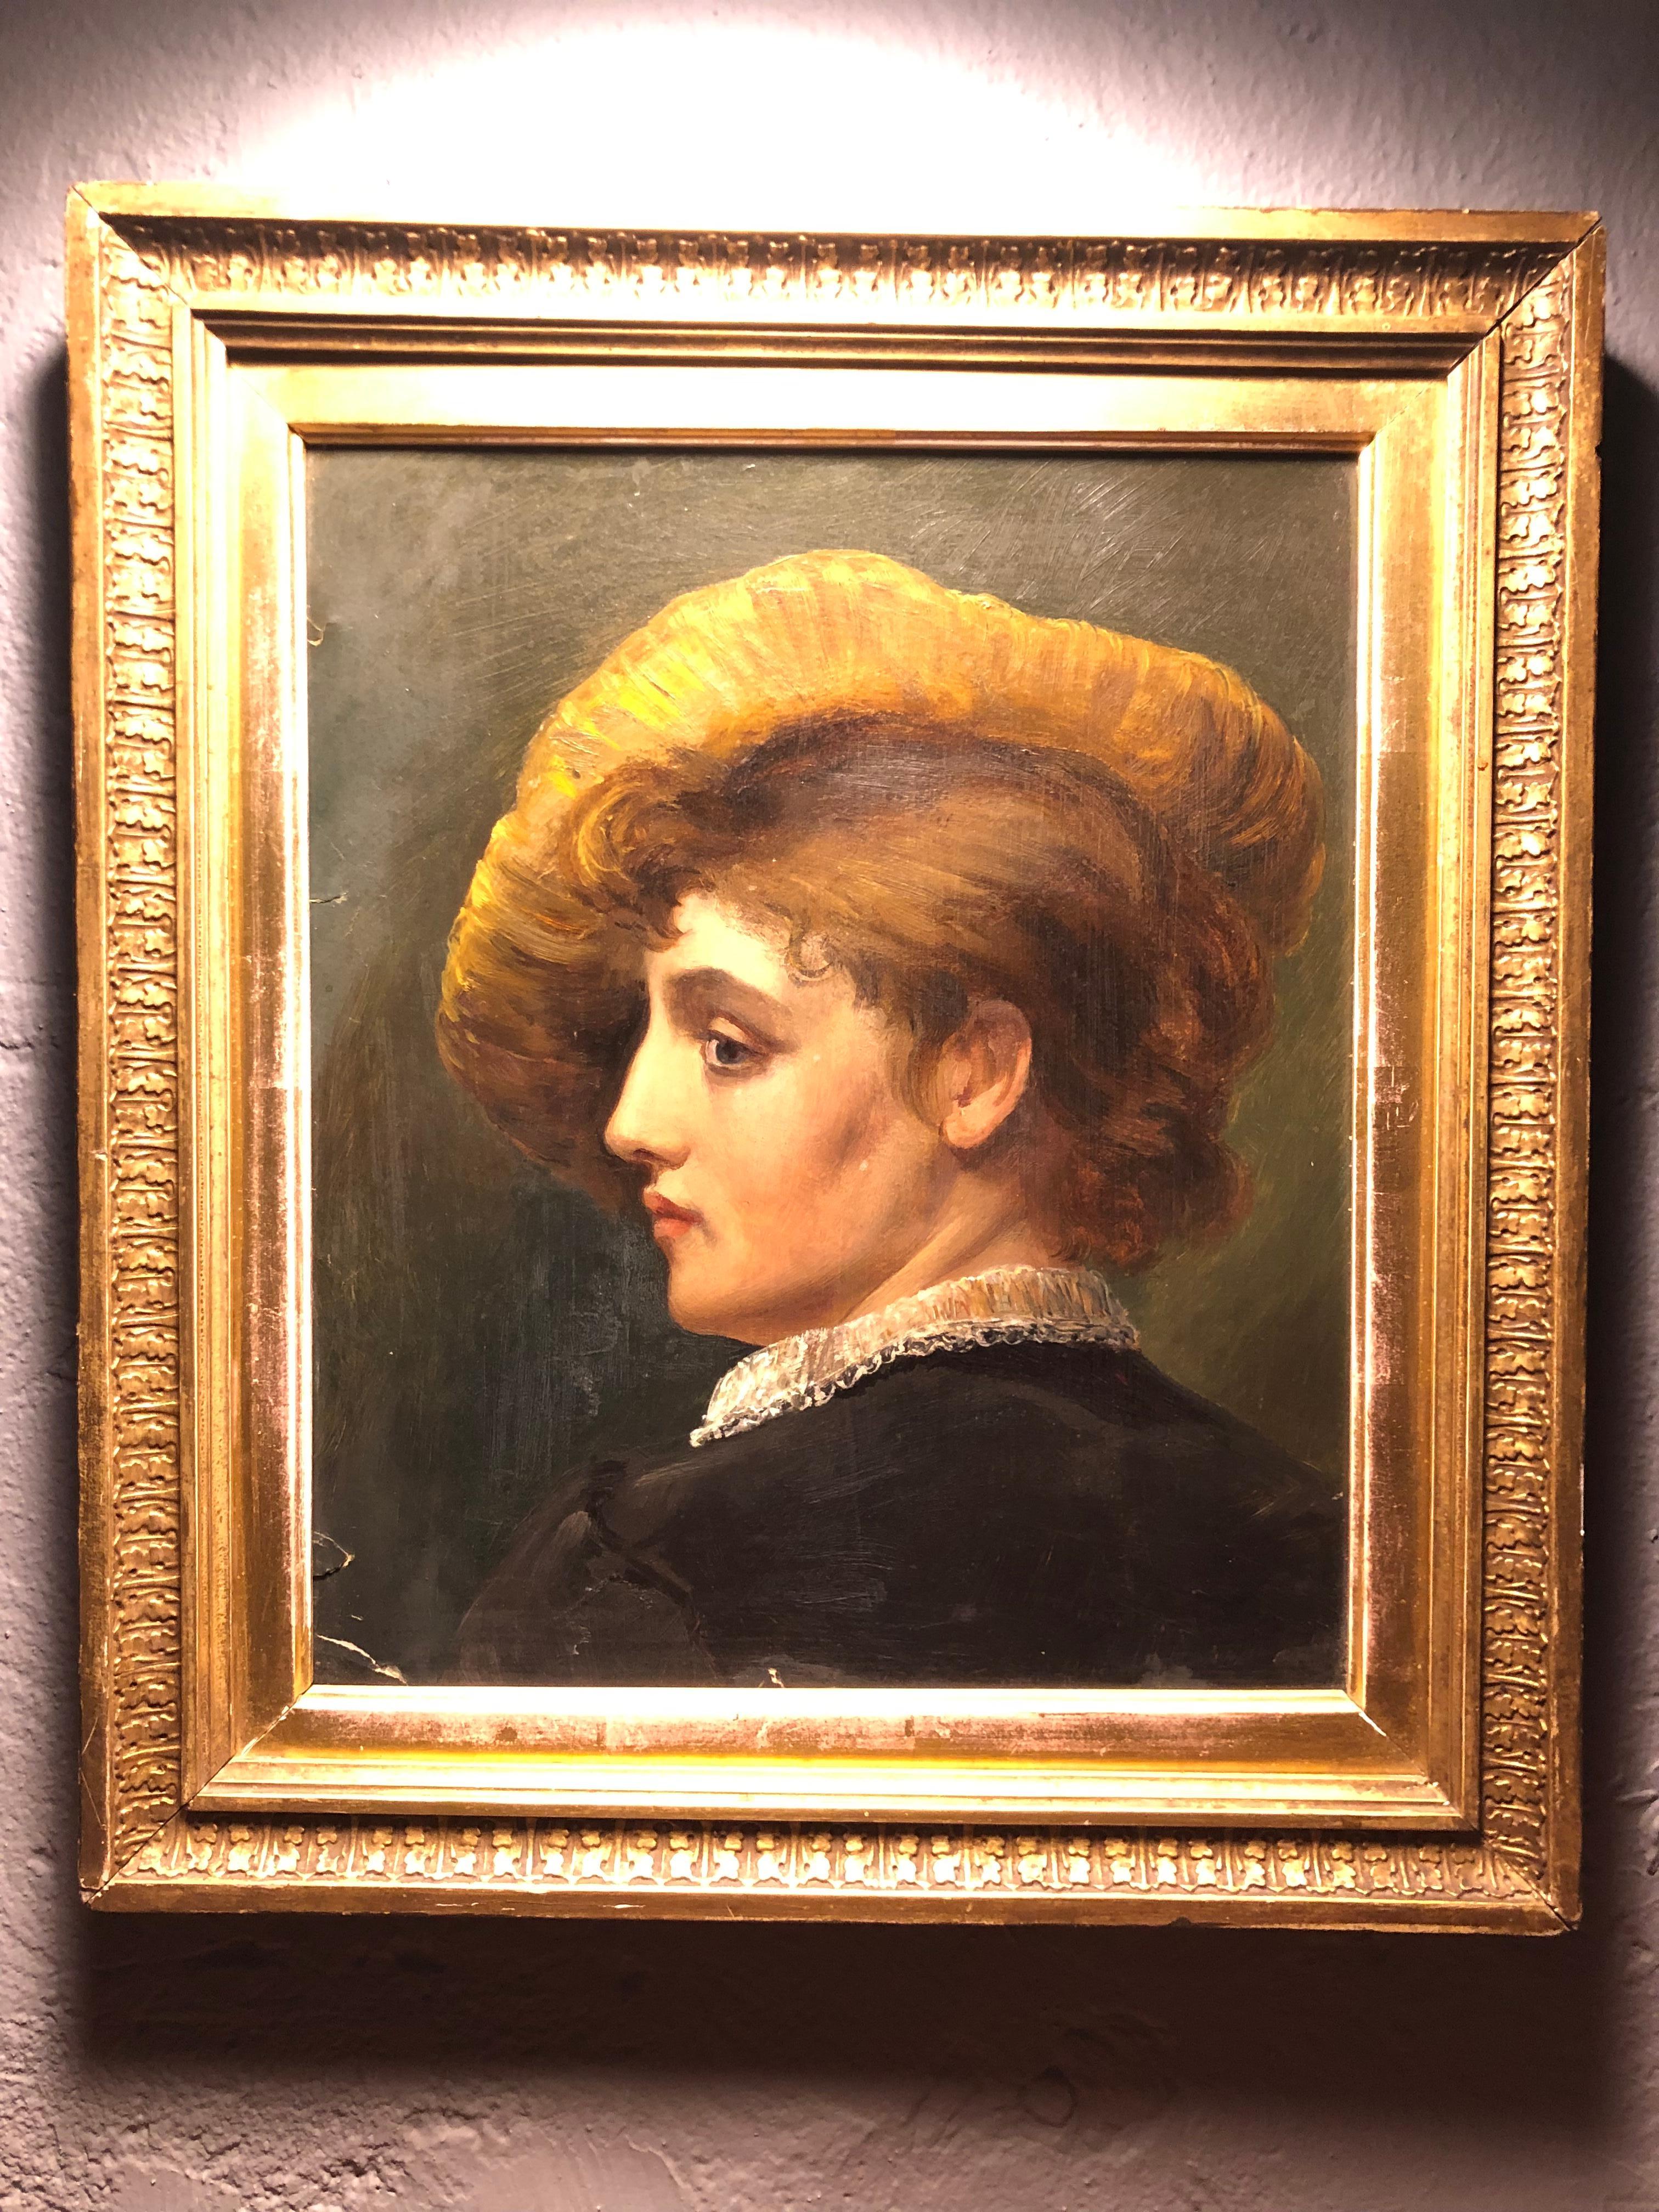 Ein auffallend schönes antikes Öl-auf-Pappe-Porträt einer Frau mit Hut.
Mit altersbedingter Abnutzung und Patina. 
Einige Risse in der Farbe am Rande, aber nichts, was von ihrer Schönheit ablenkt. Bitte sehen Sie sich die Bilder an. 
Es wurde